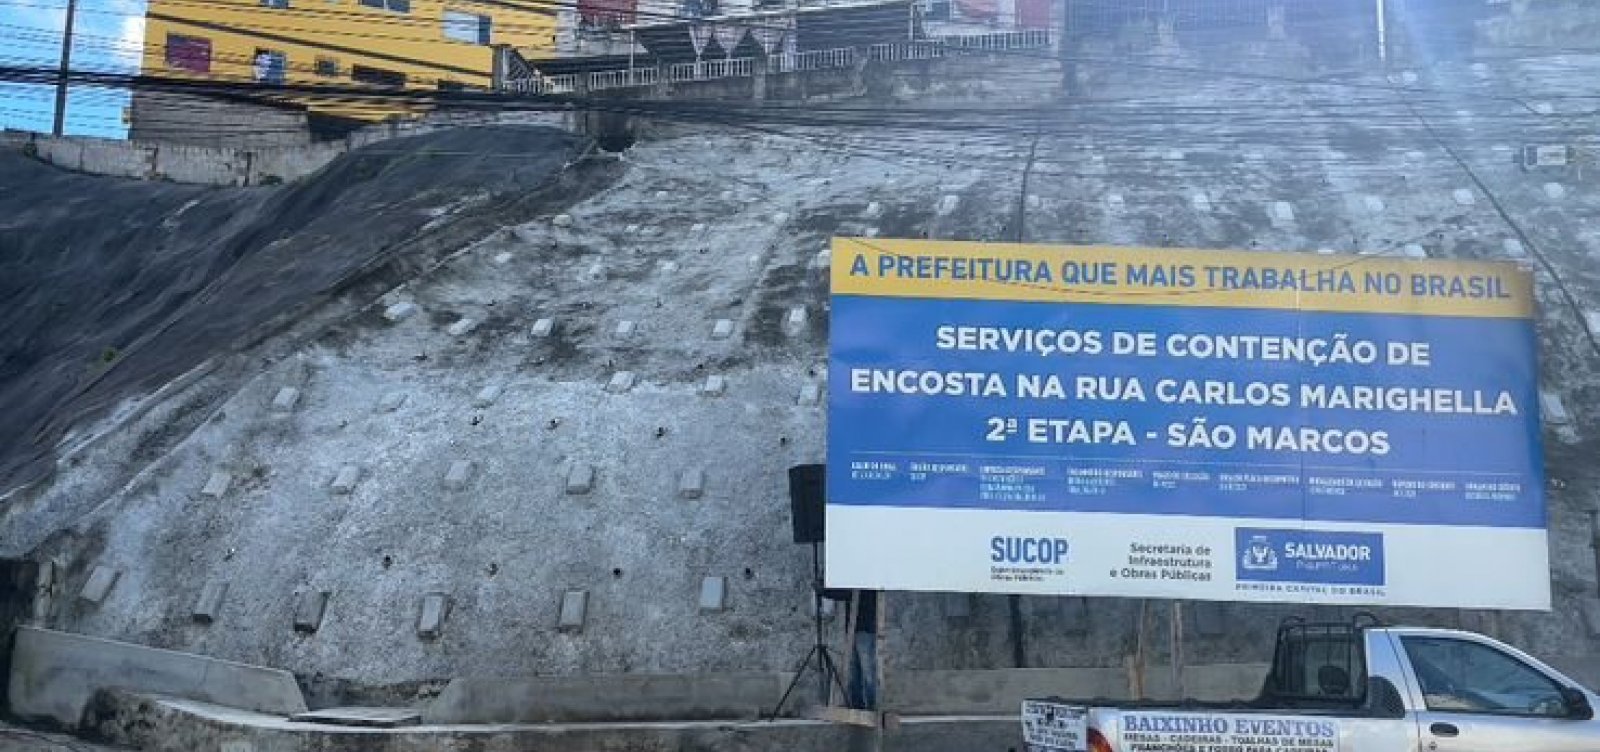 Prefeitura entrega contenções de encosta em São Marcos nesta terça-feira